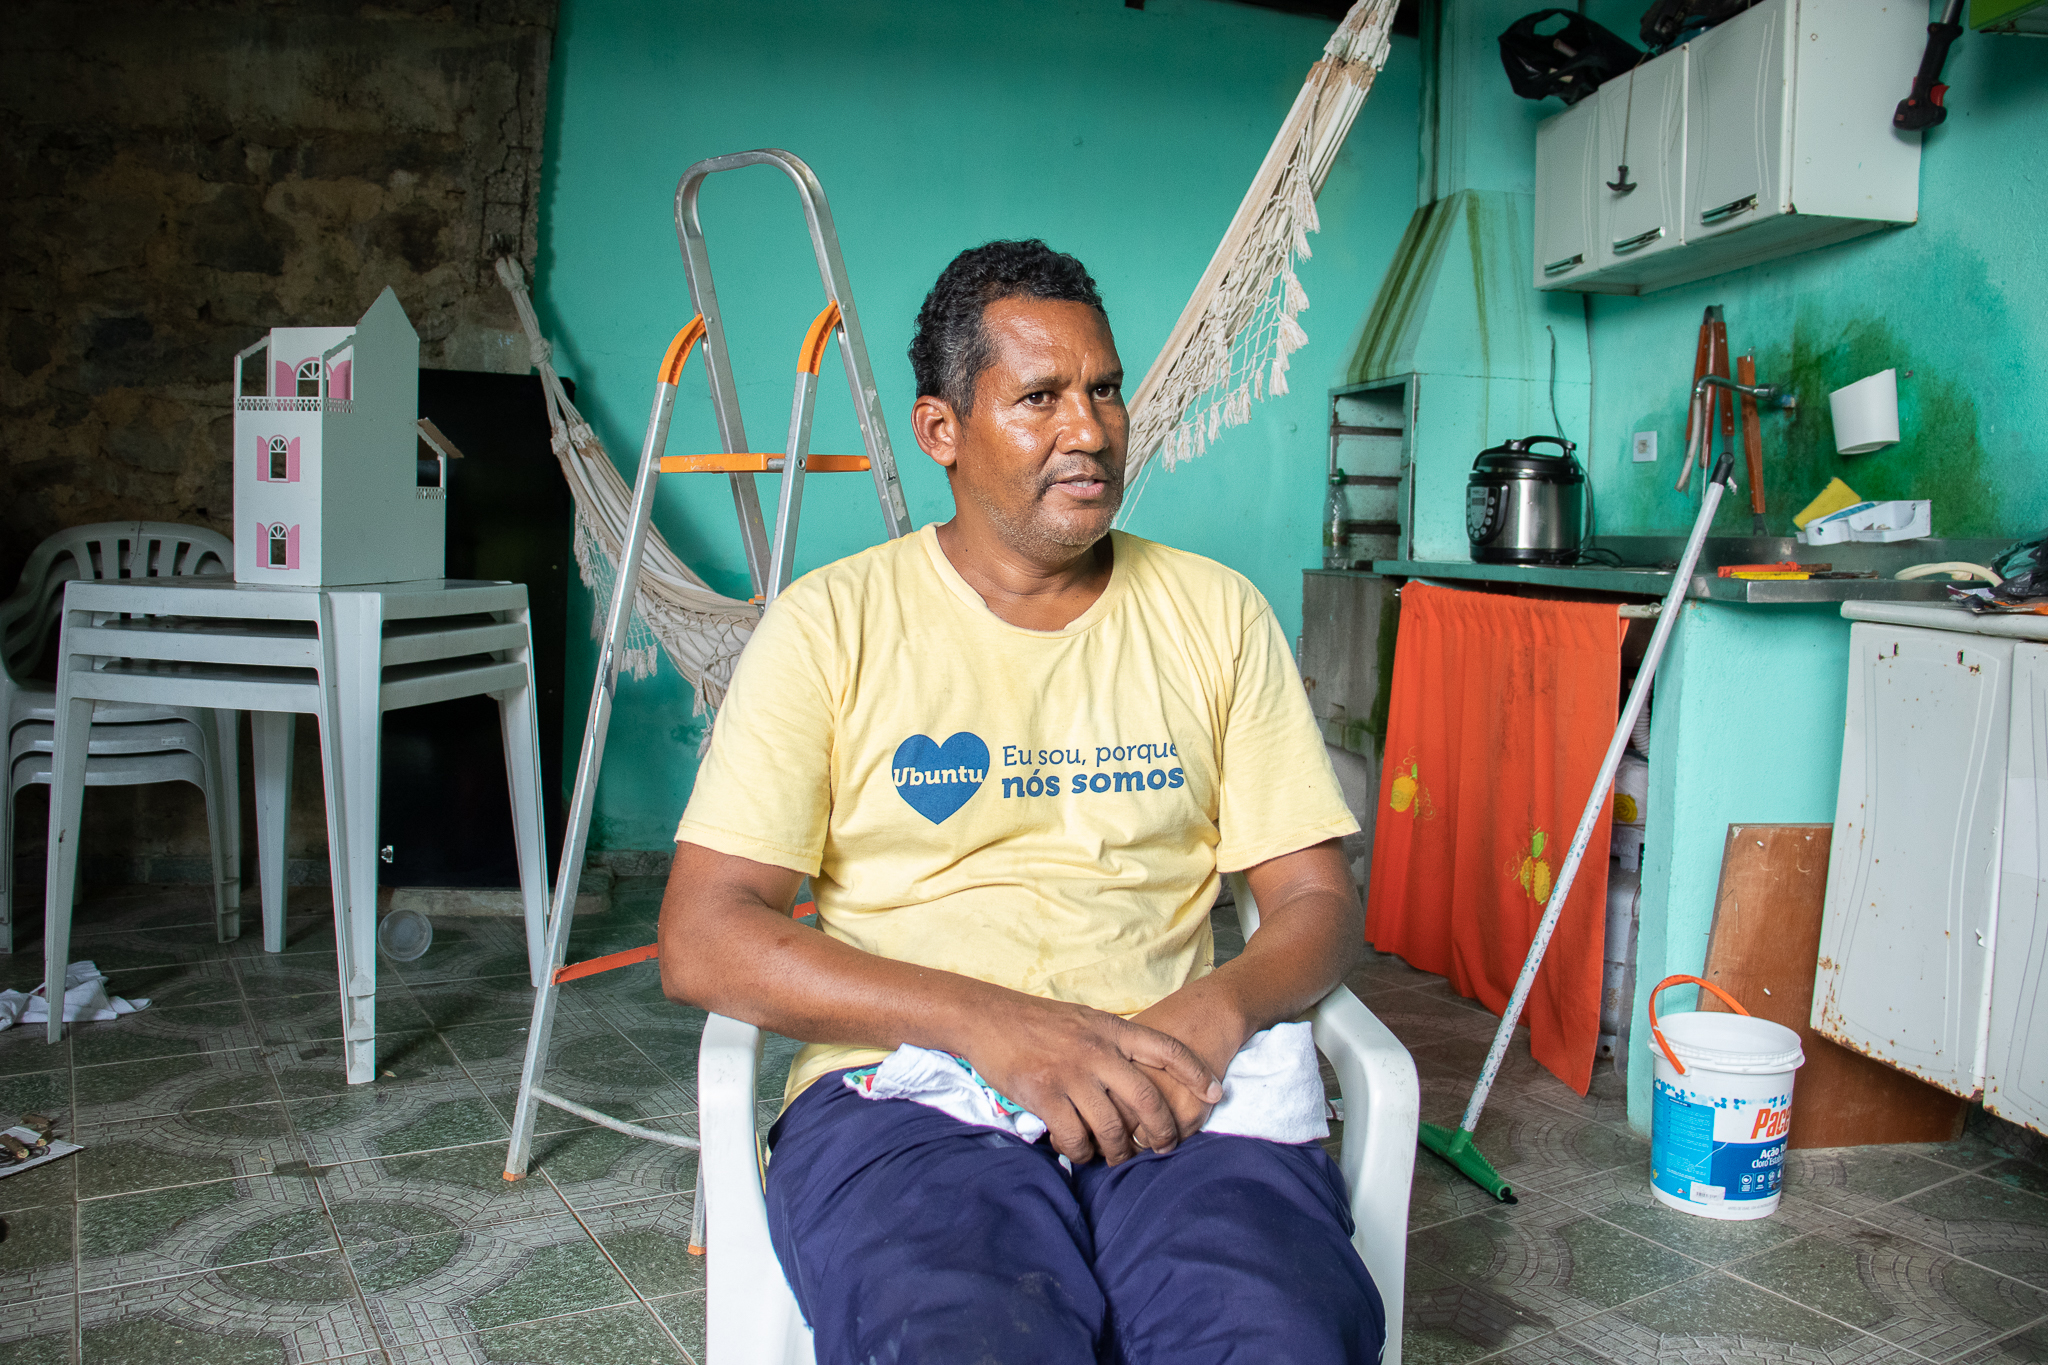 Momento da entrevista com Marquinho, um dos moradores do Pedacinho do Céu. Foto: João Fernando